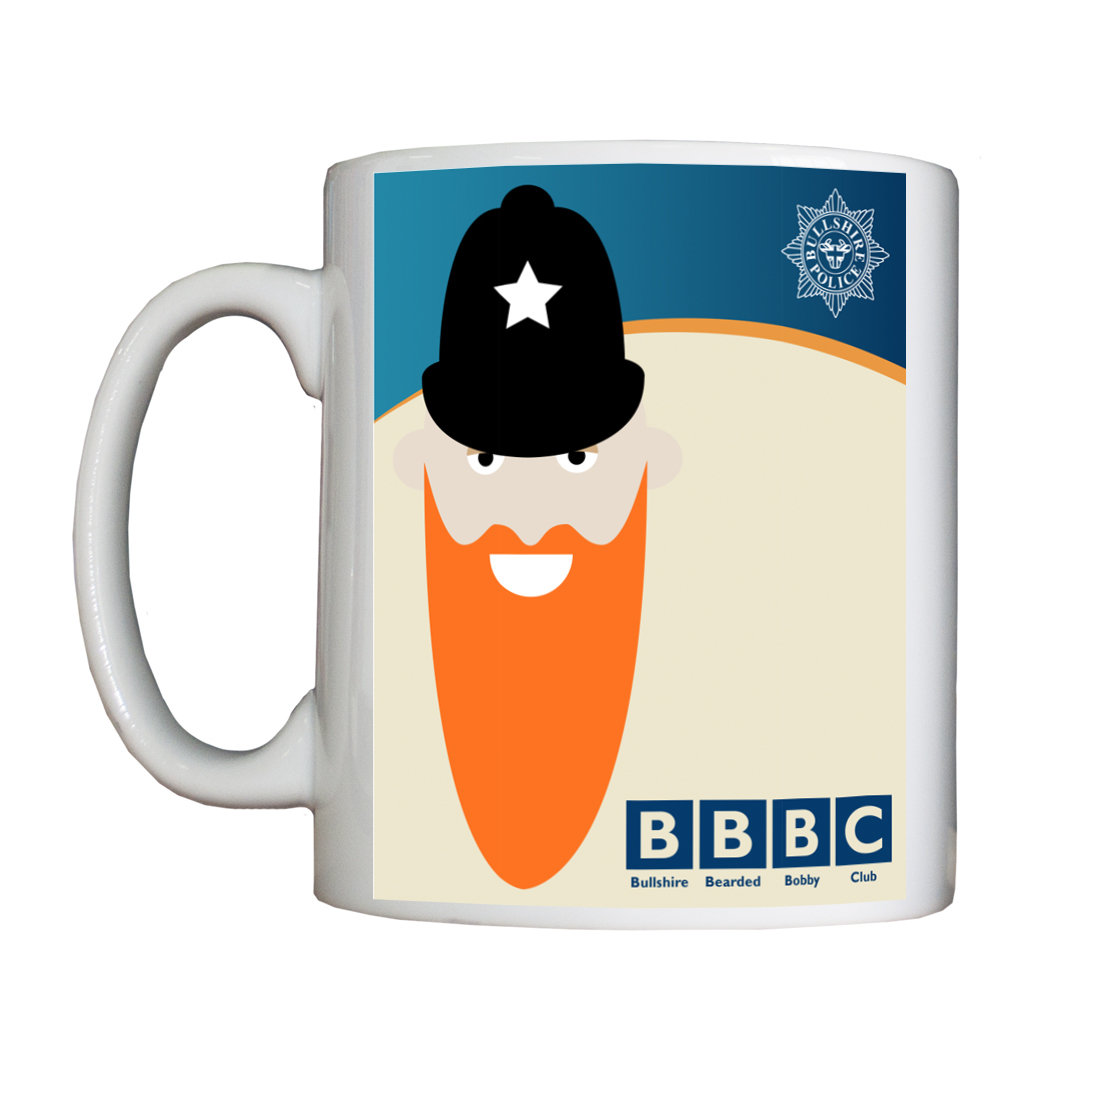 Personalised 'Bullshire Bearded Bobby Club' Mug